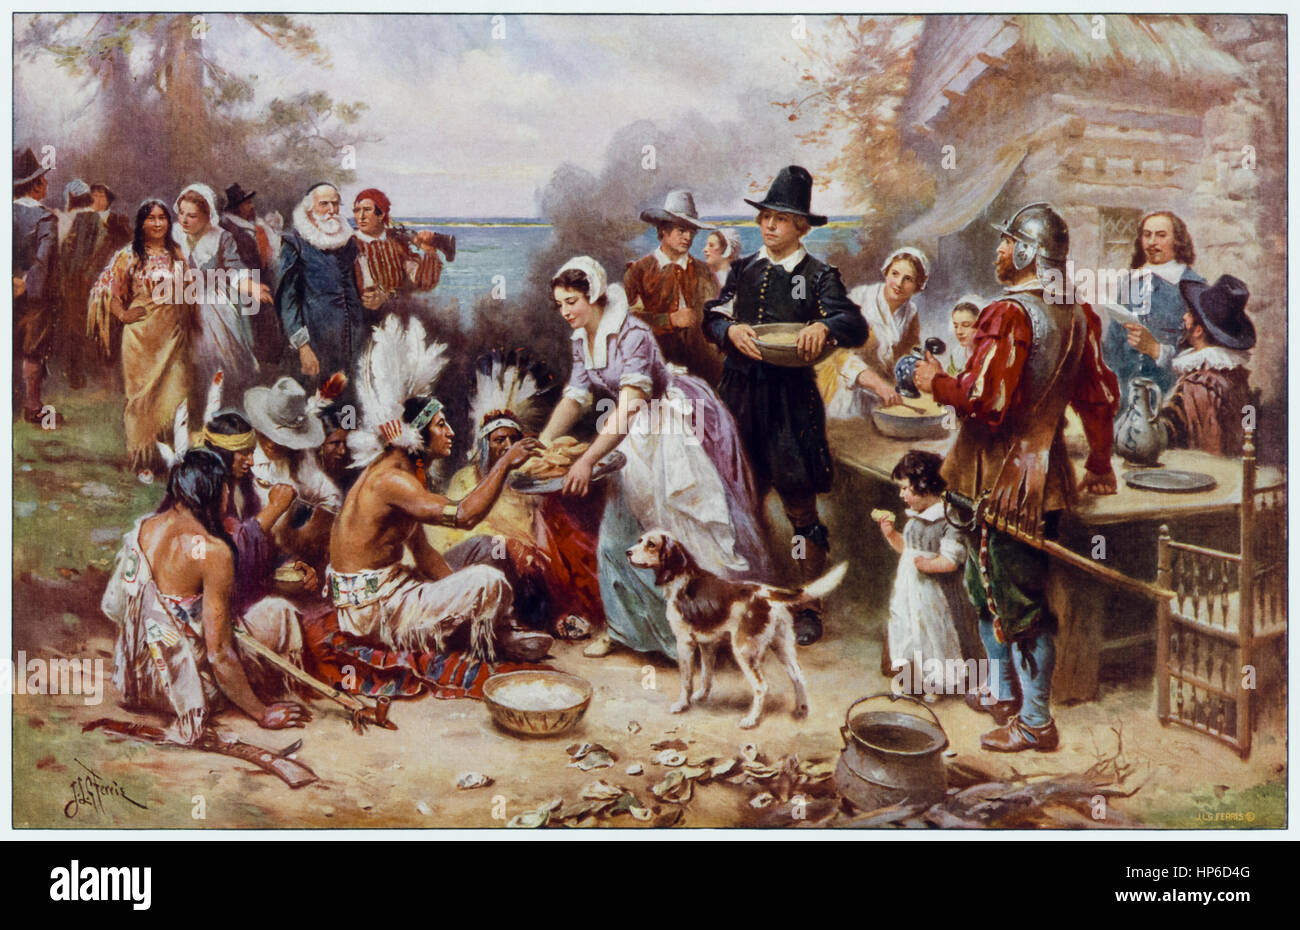 "La première action de grâce 1621" par Jean Leon Gerome Ferris (1863-1930) artiste américain qui a peint de nombreuses scènes de l'histoire américaine ; dans cette scène idéalisée des Amérindiens et pèlerins partagent un repas. Banque D'Images